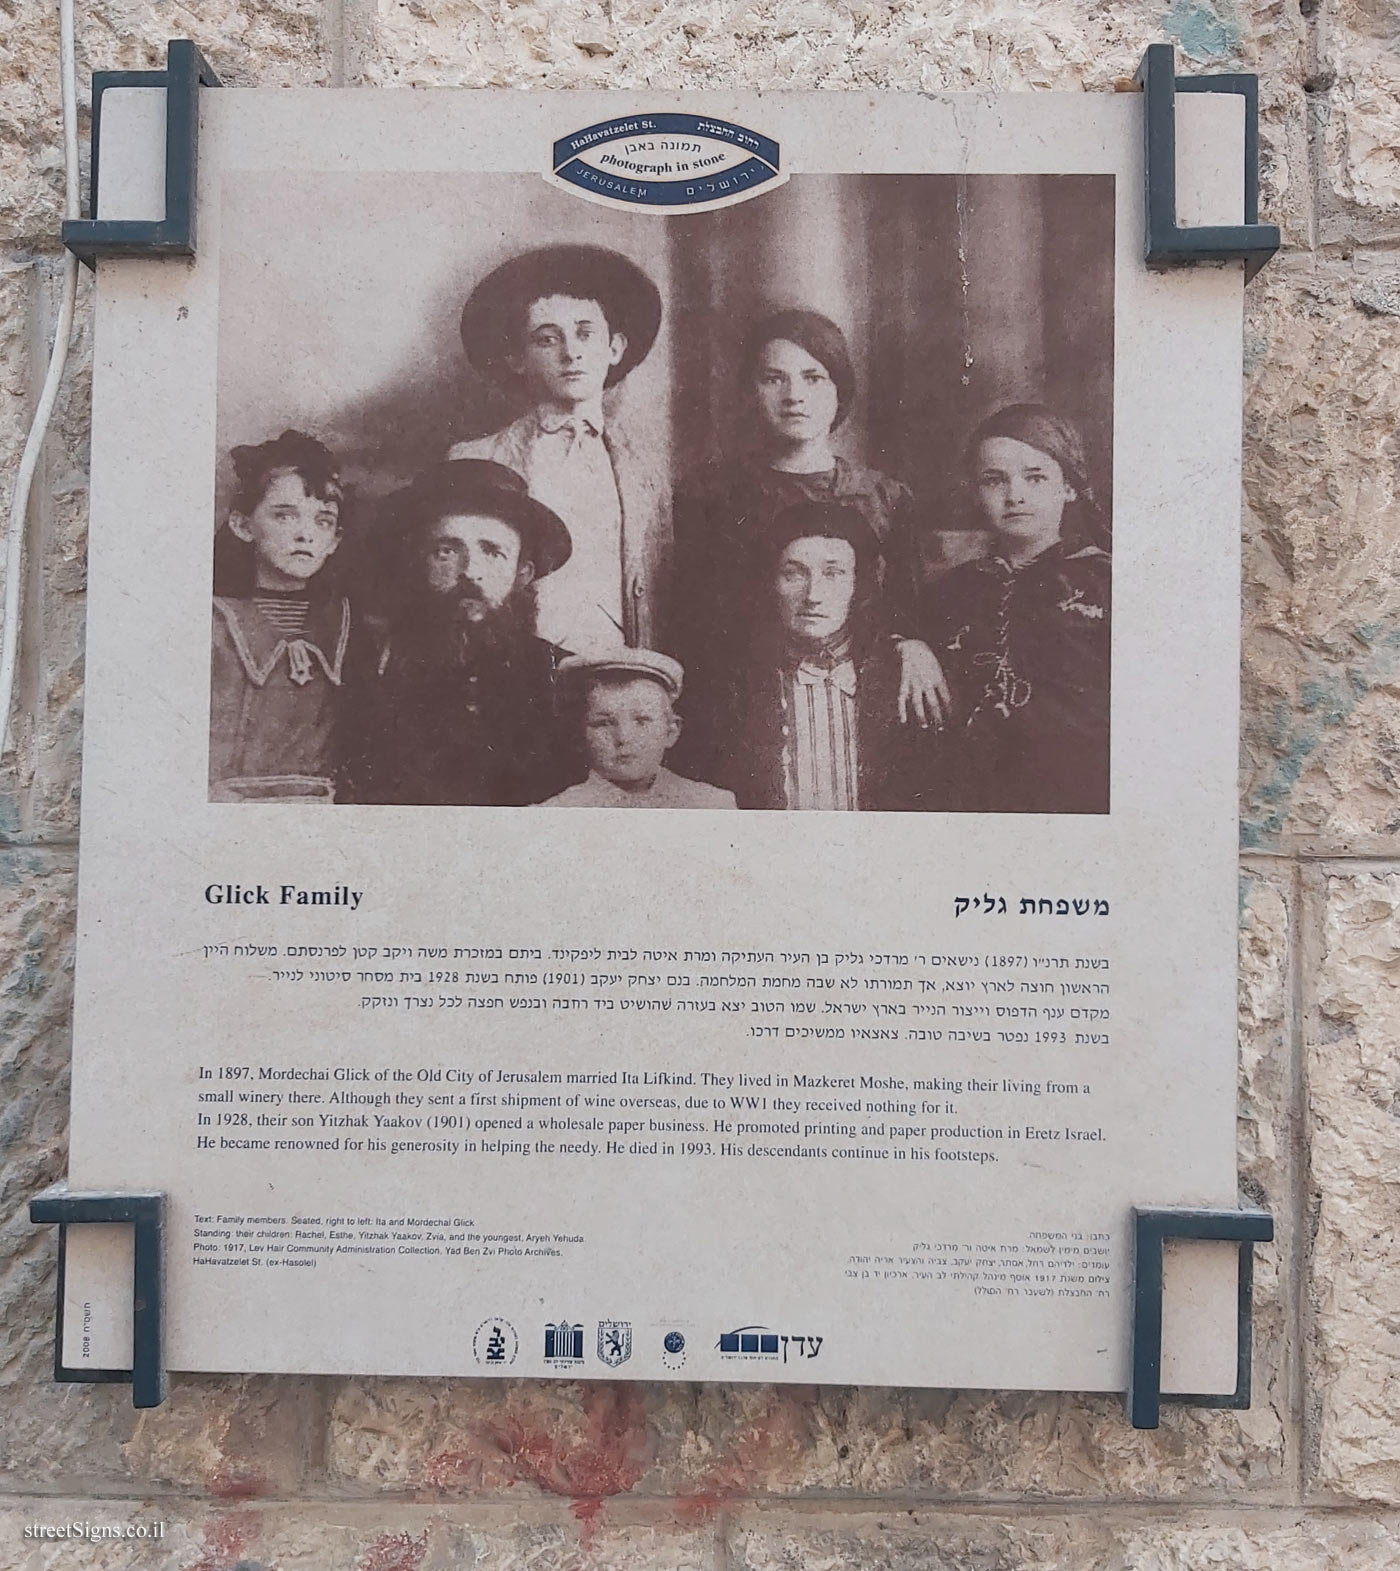 Jerusalem - Photograph in stone - Glick Family